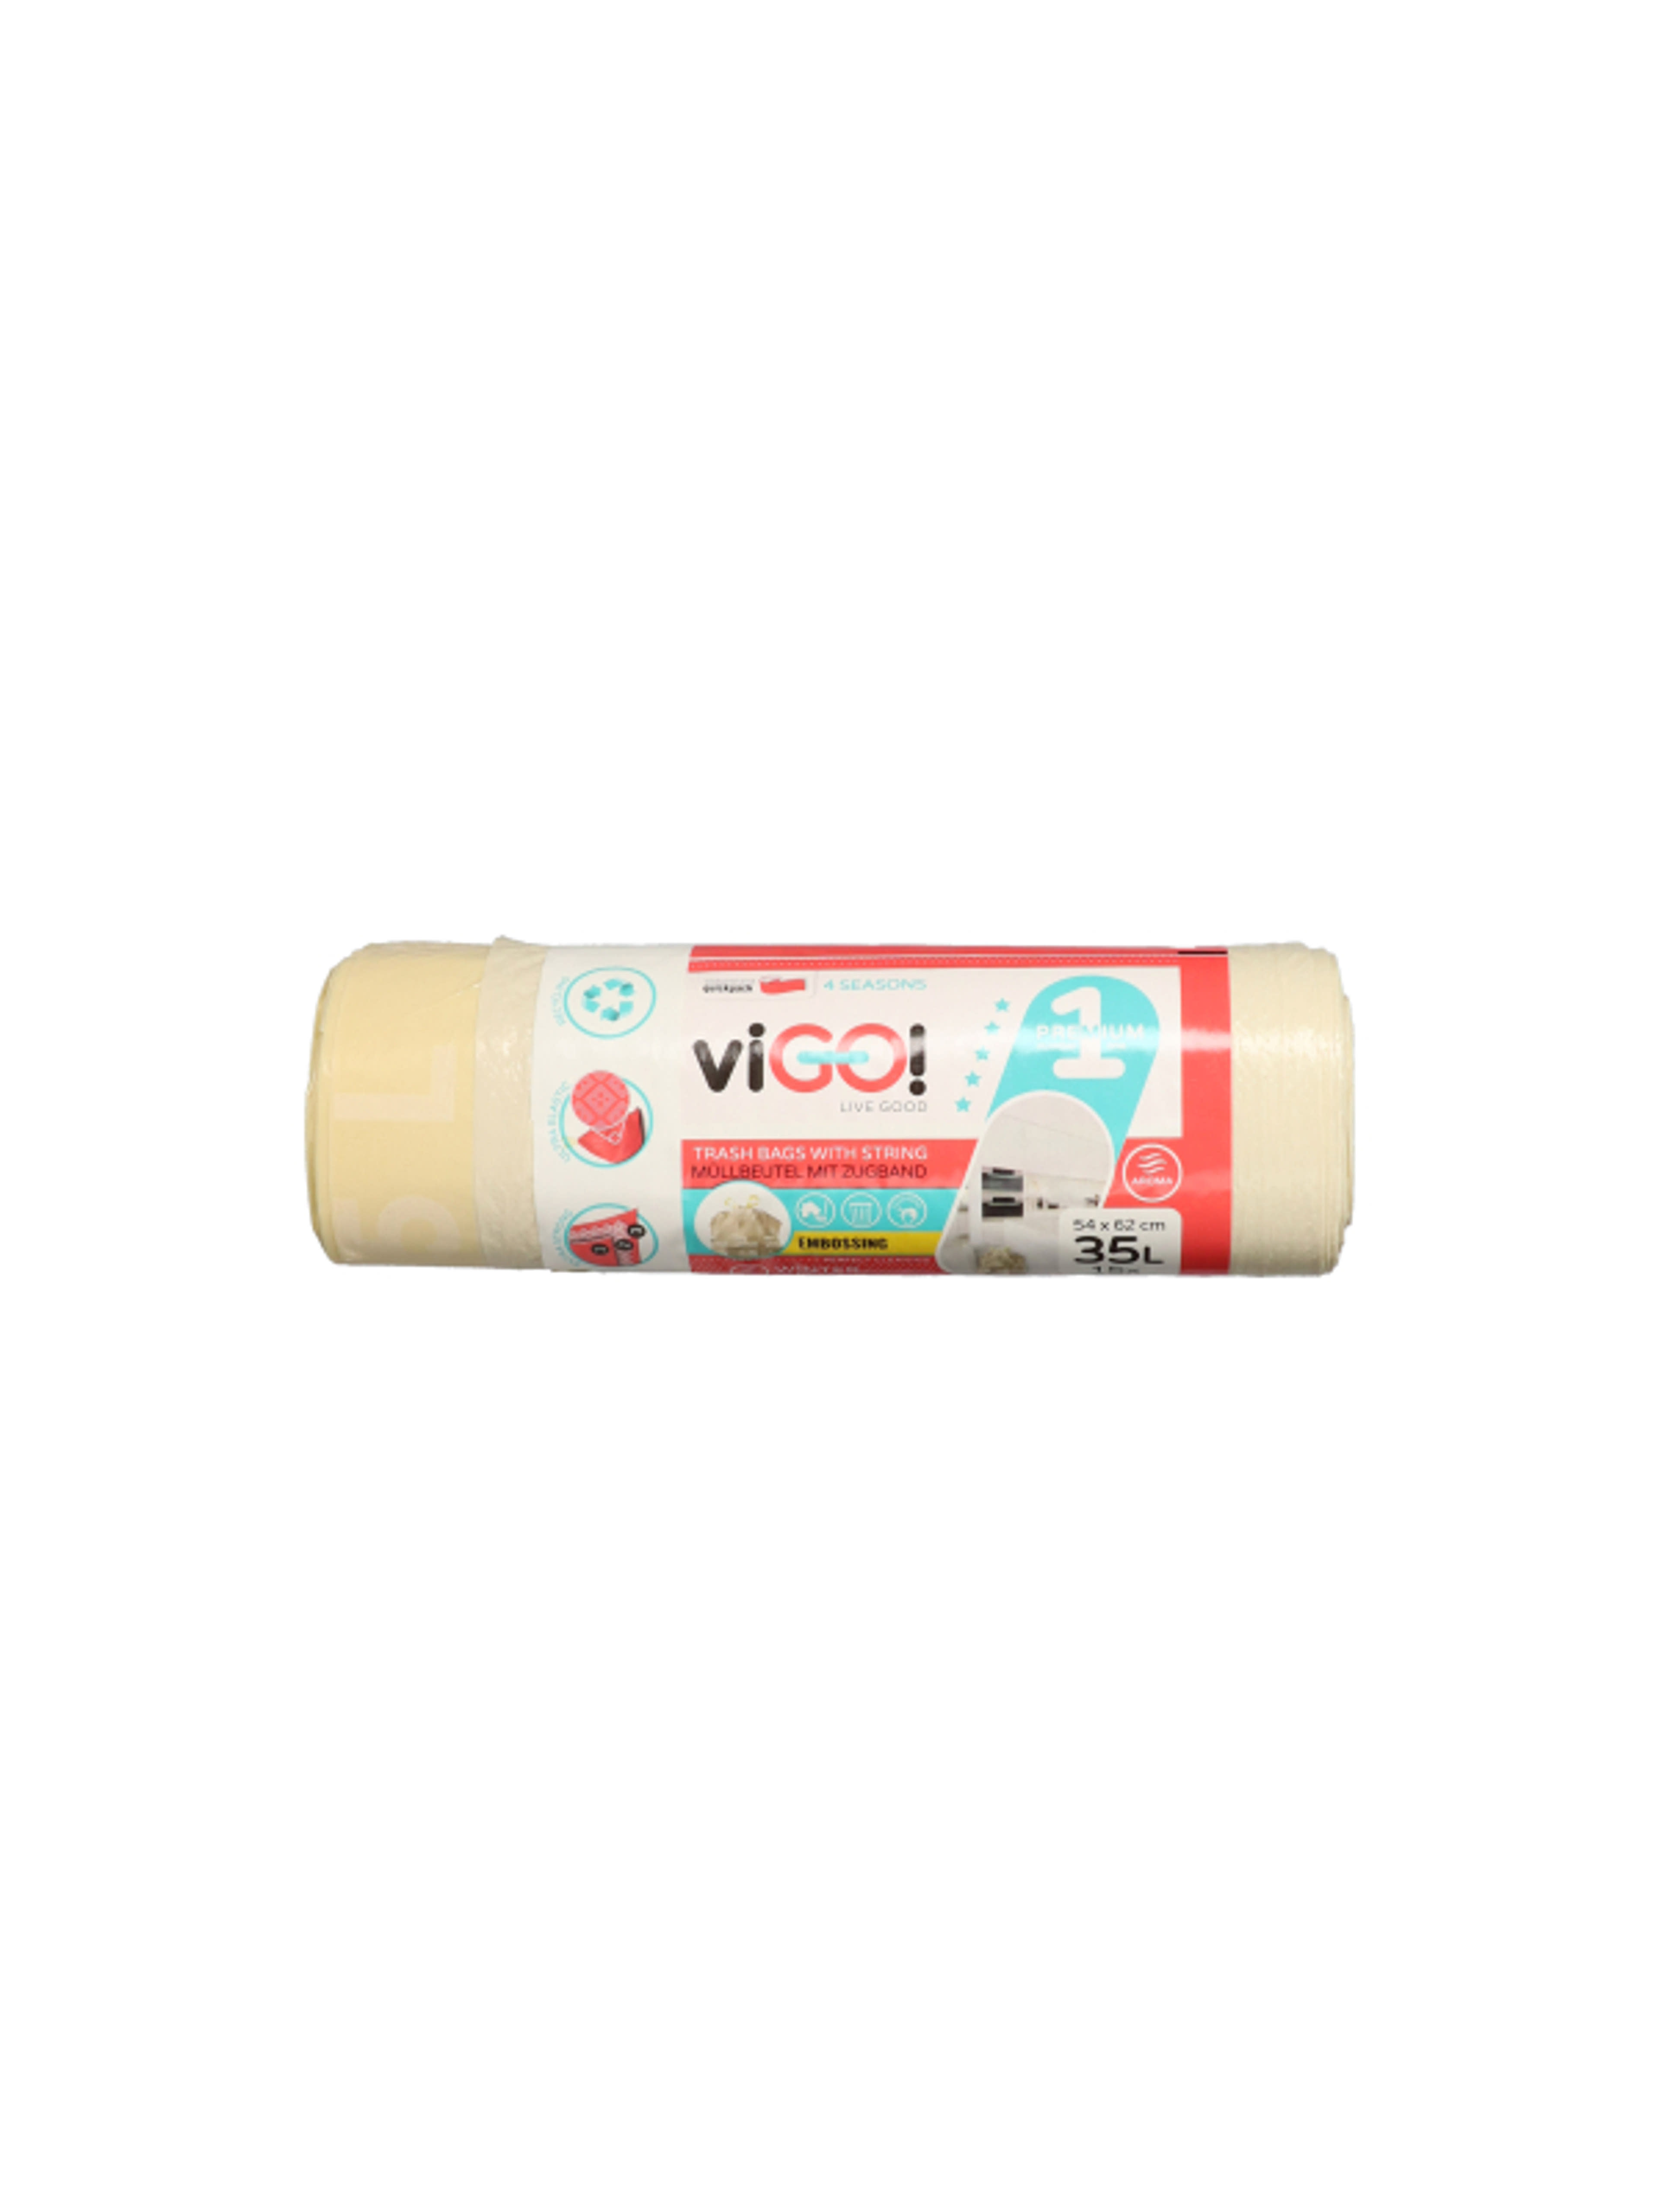 Vigo szemeteszsák, zárószalaggal, vanília illattal, 35 L - 15 db-1